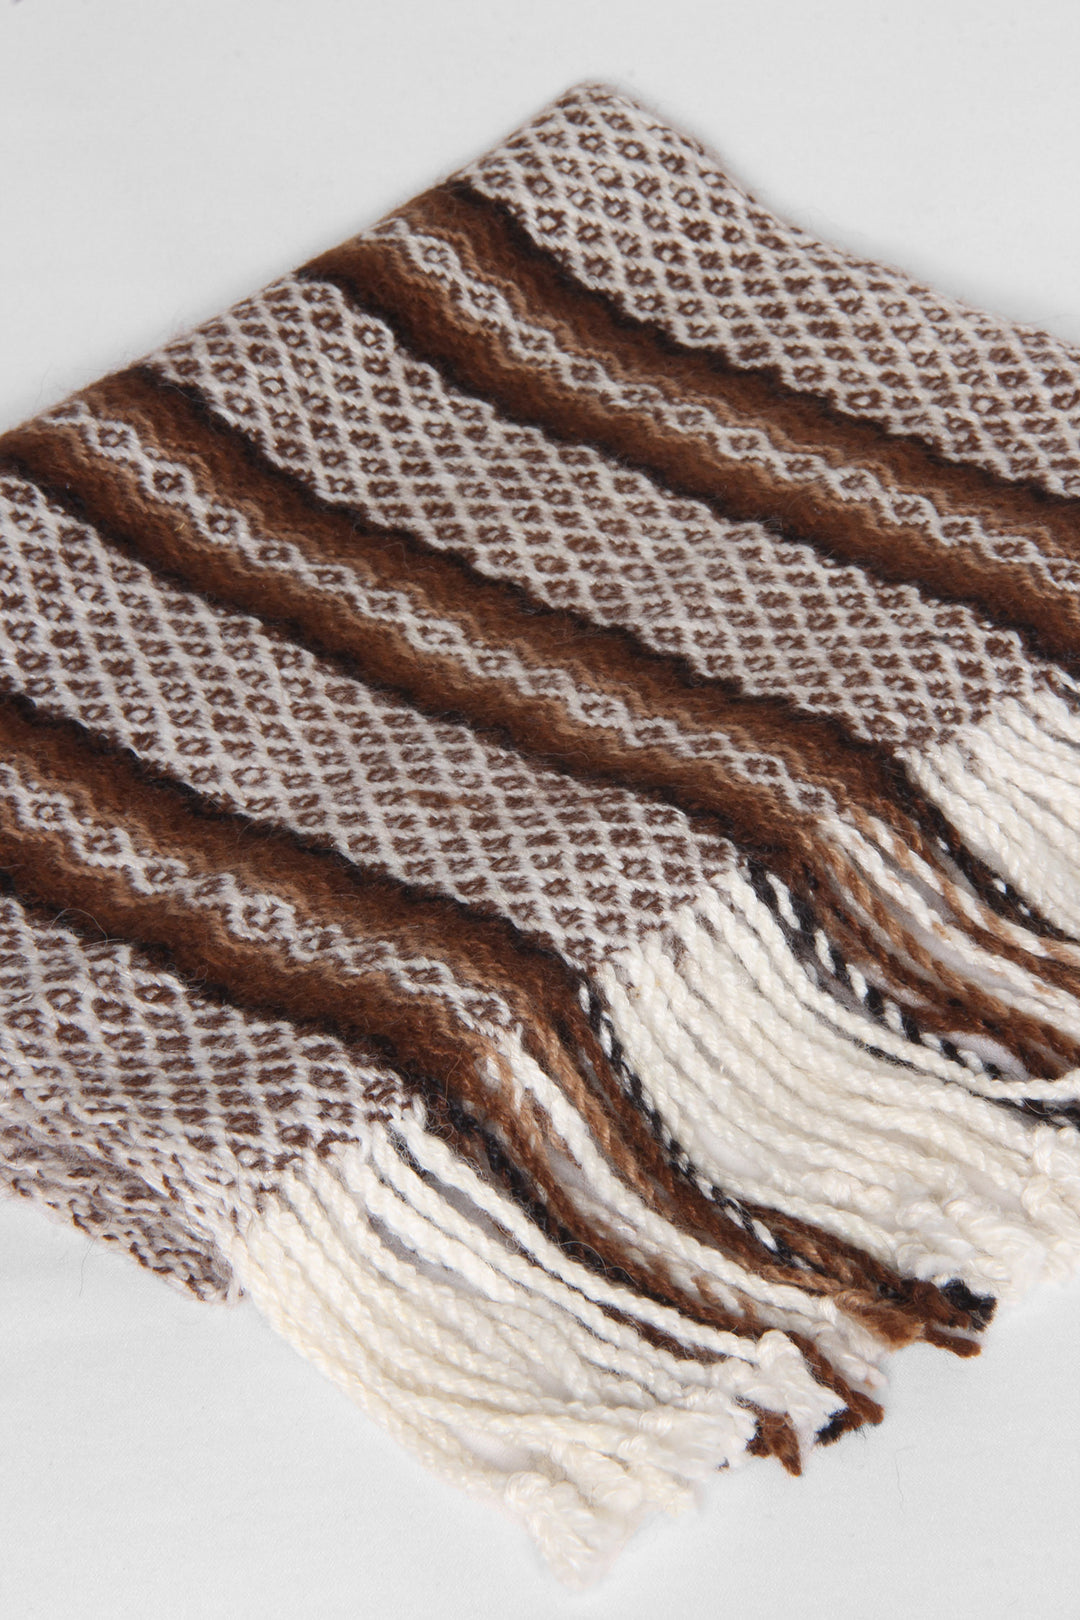 Der braun-weiße Tribal Art Schal ist der perfekte Schal für alle, die ihren Look aufpeppen möchten. Das bequeme und warme Material macht ihn zum Lieblingsschal für jedes Outfit.